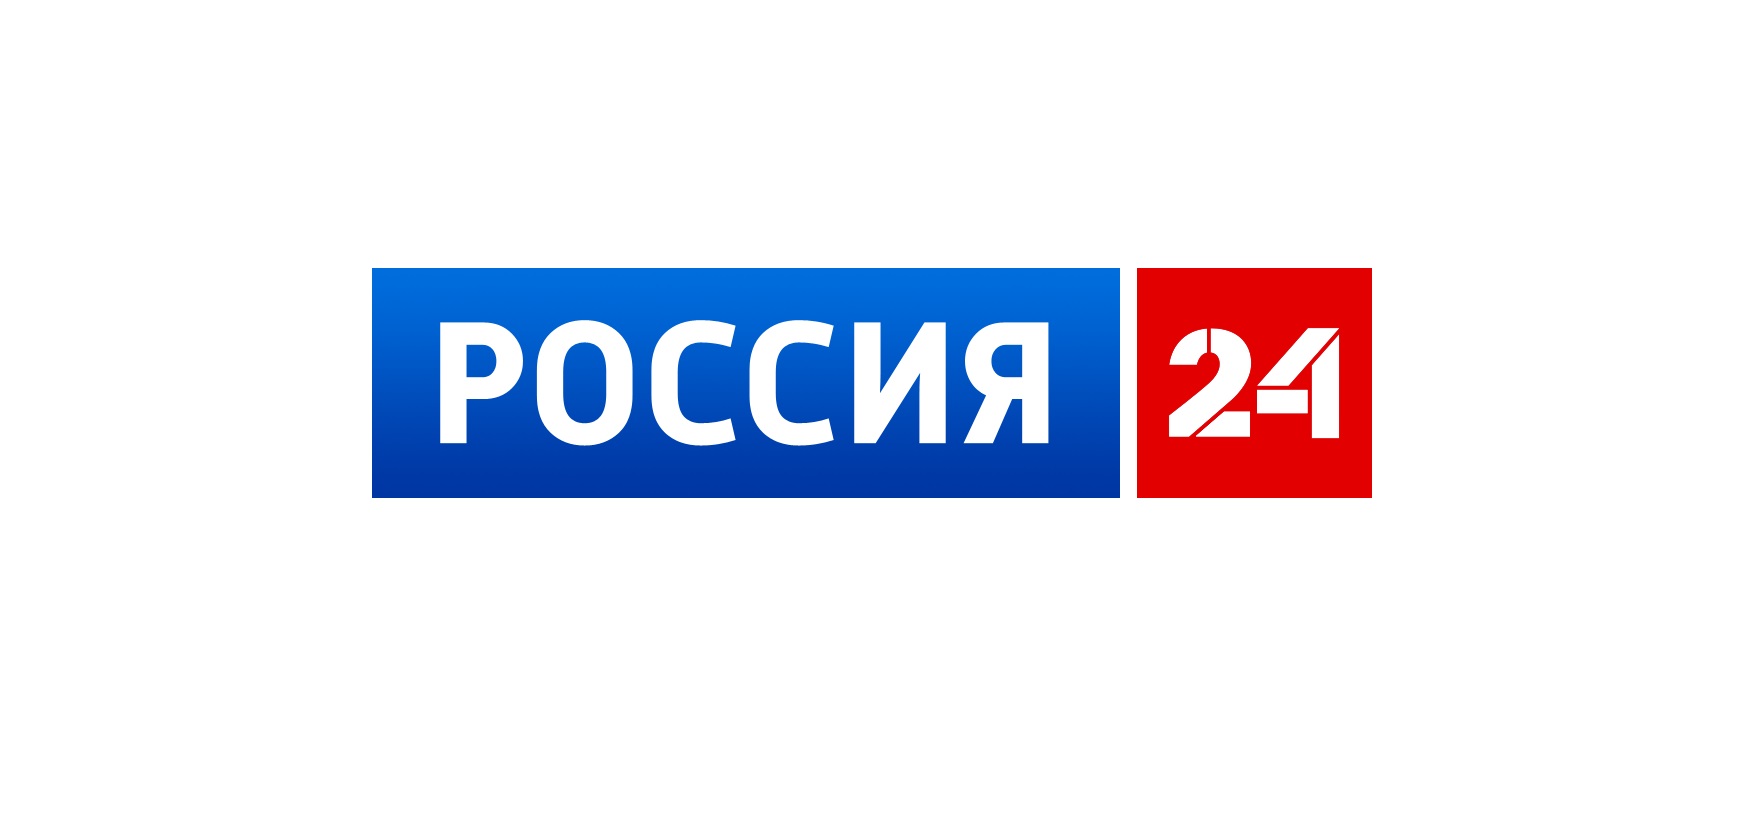 24 1 2024 россия 24